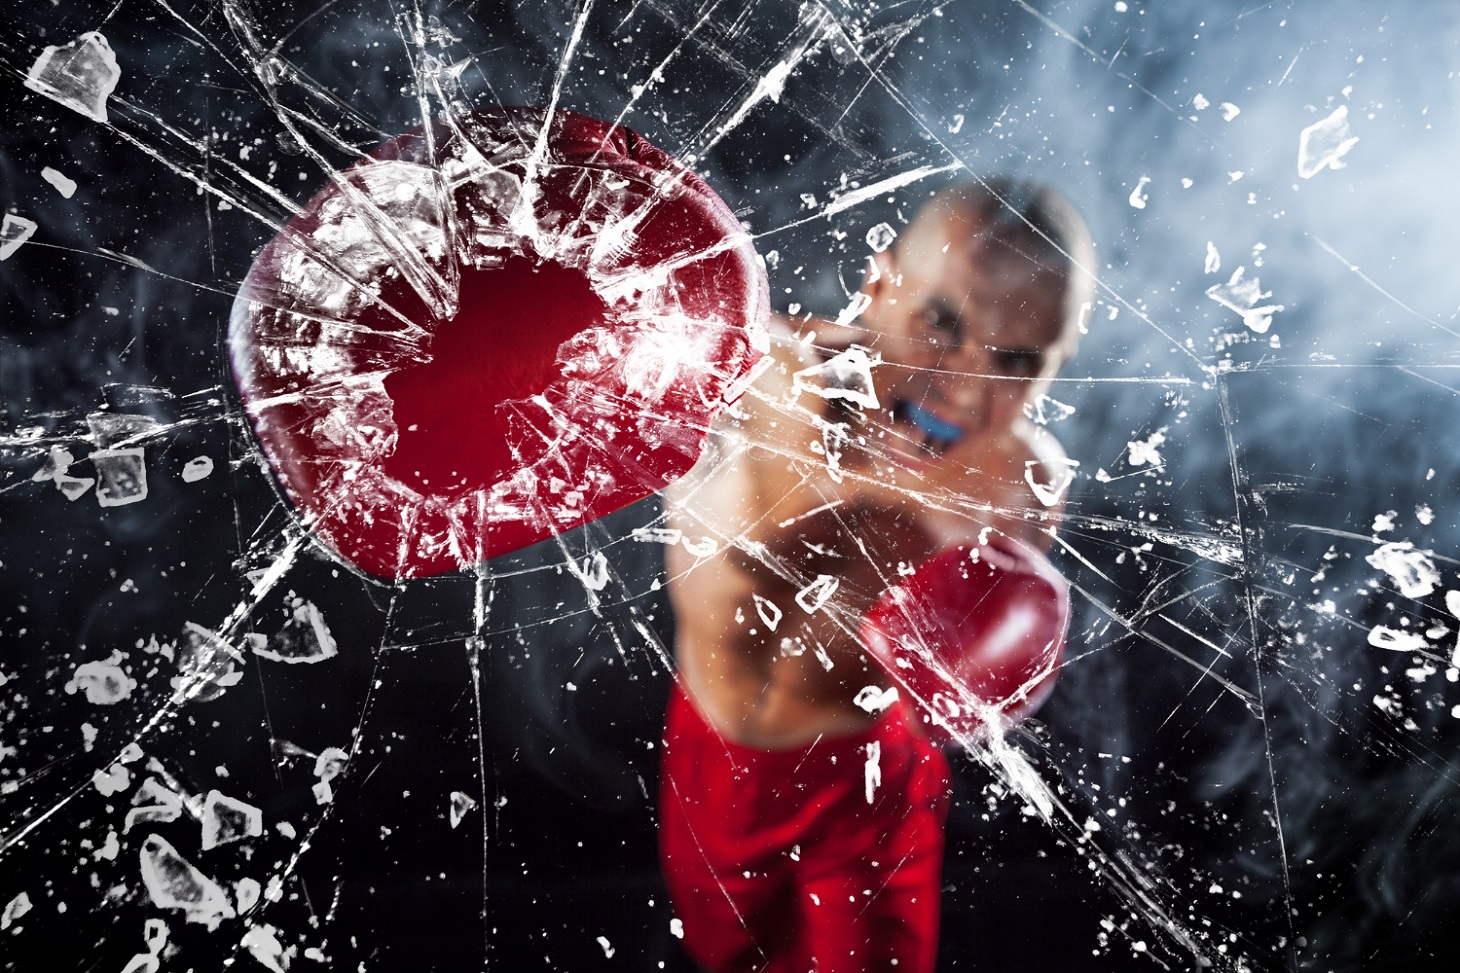 boxer-crushing-glass-young-male-athlete-kickboxing-blue-smoke_master1305_freepik.jpg